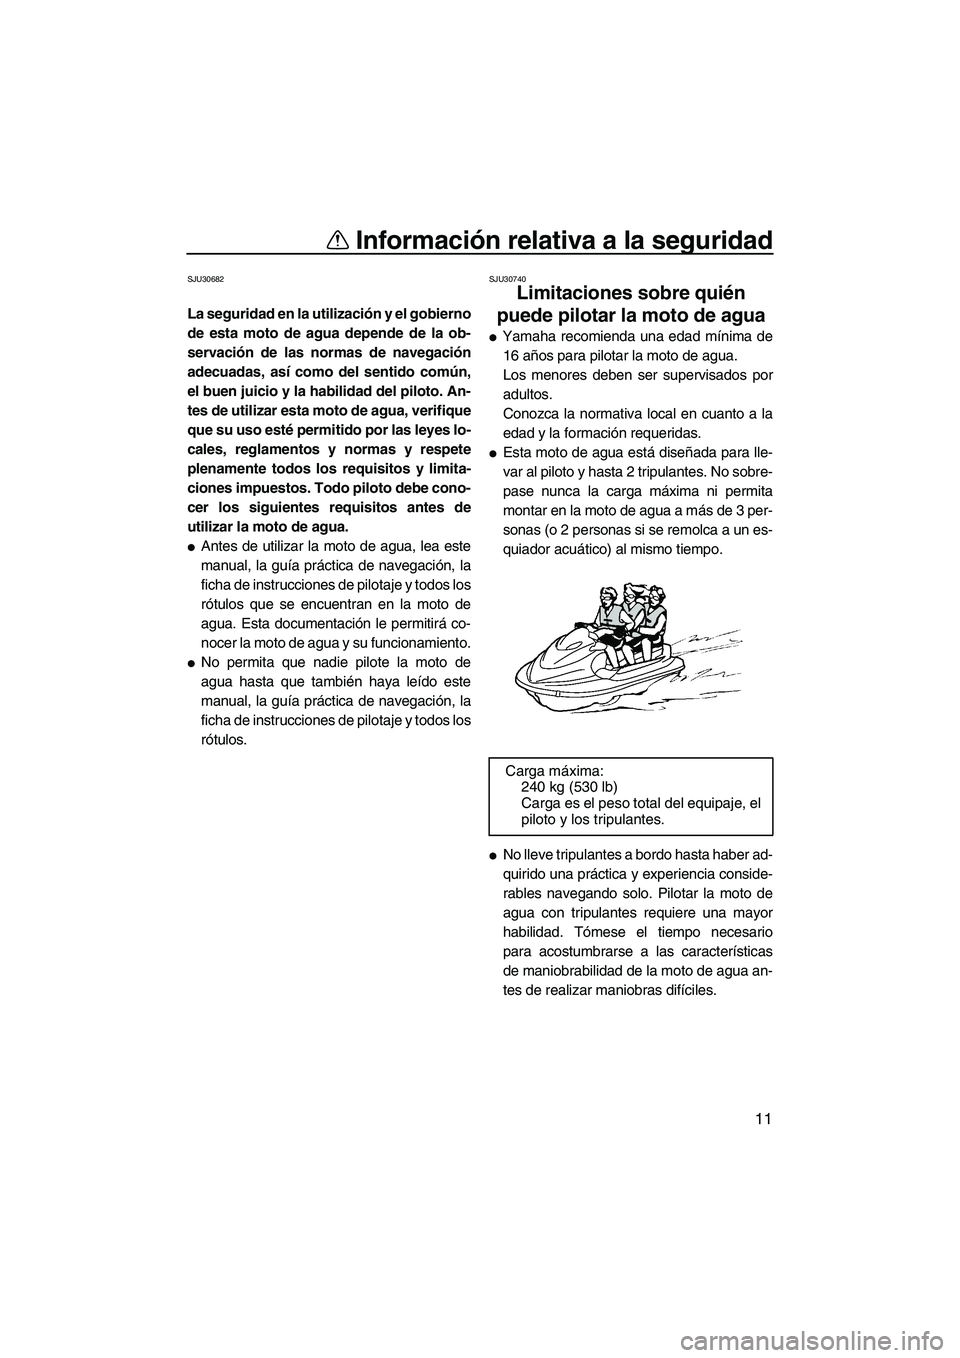 YAMAHA SVHO CRUISER 2011  Manuale de Empleo (in Spanish) Información relativa a la seguridad
11
SJU30682
La seguridad en la utilización y el gobierno
de esta moto de agua depende de la ob-
servación de las normas de navegación
adecuadas, así como del s